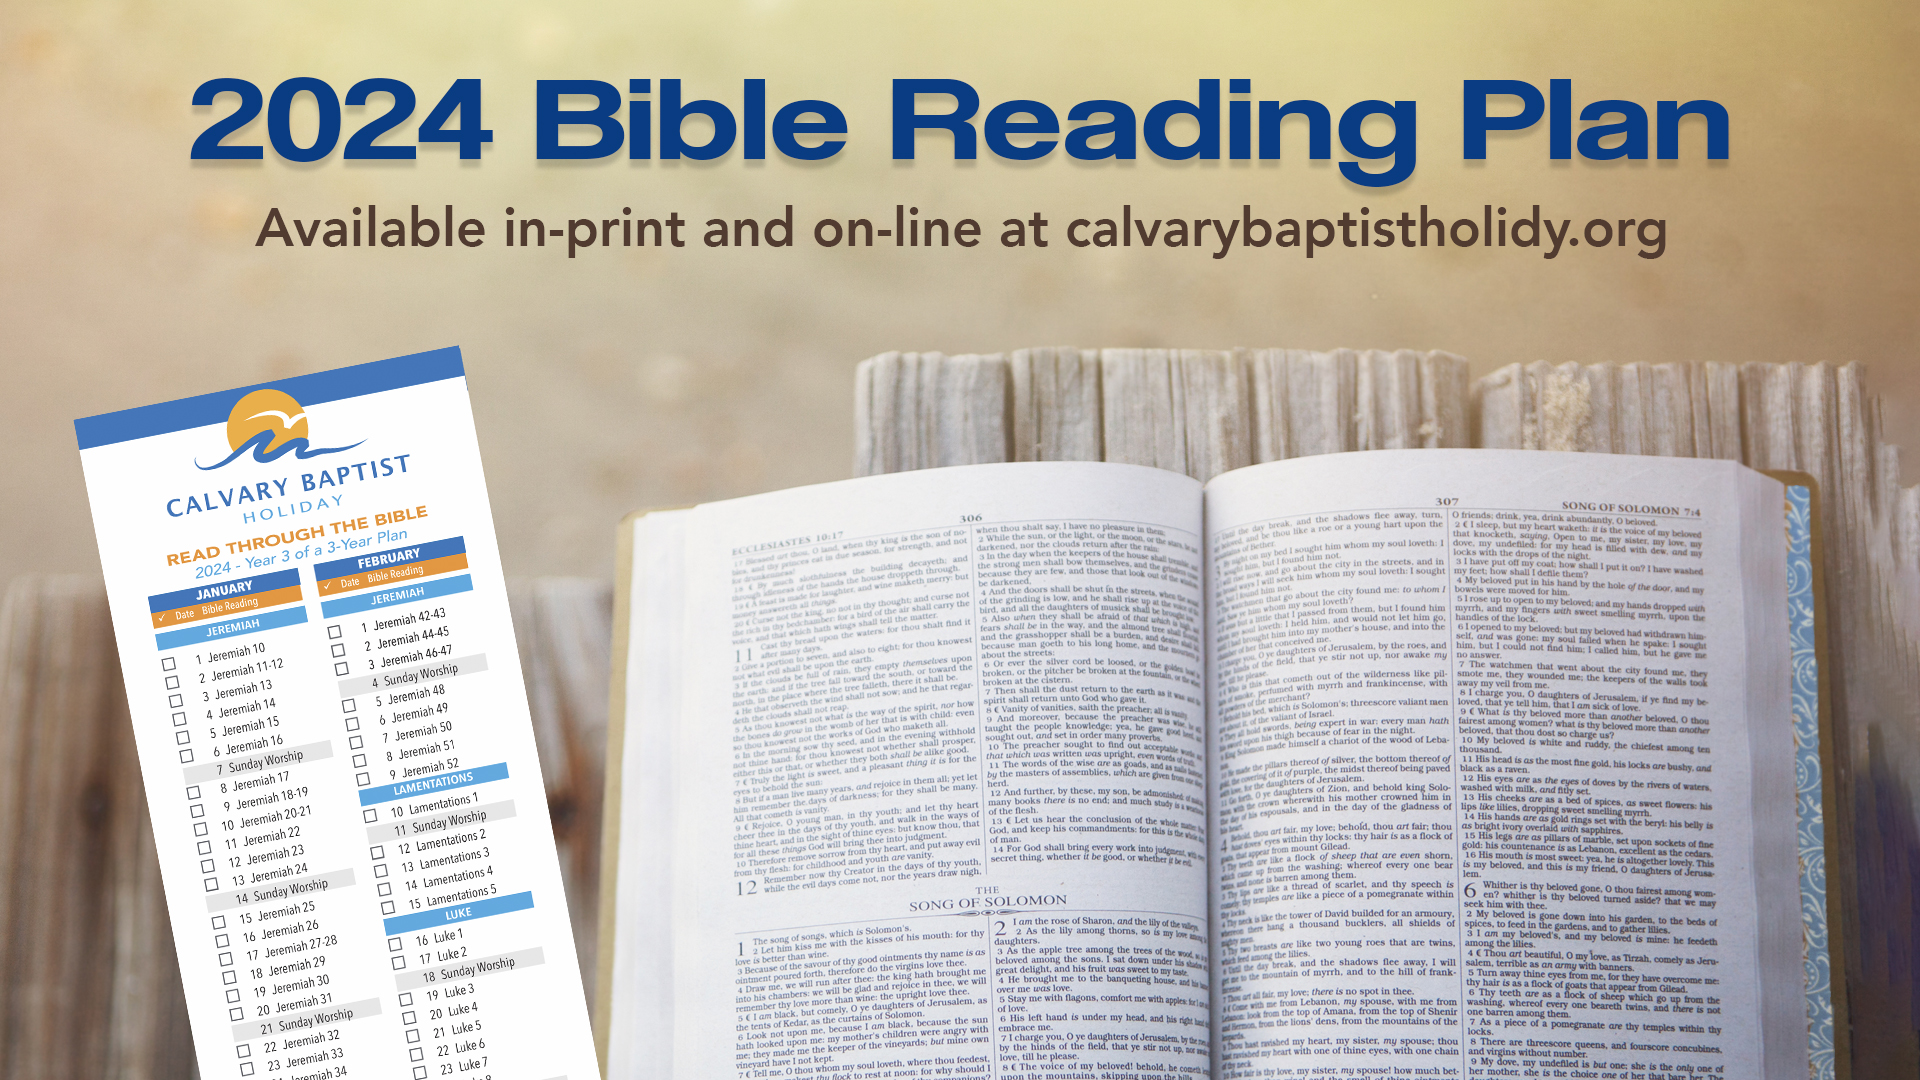 2024_Bible_Reading_Plan_1920x1080_rev_2 copy